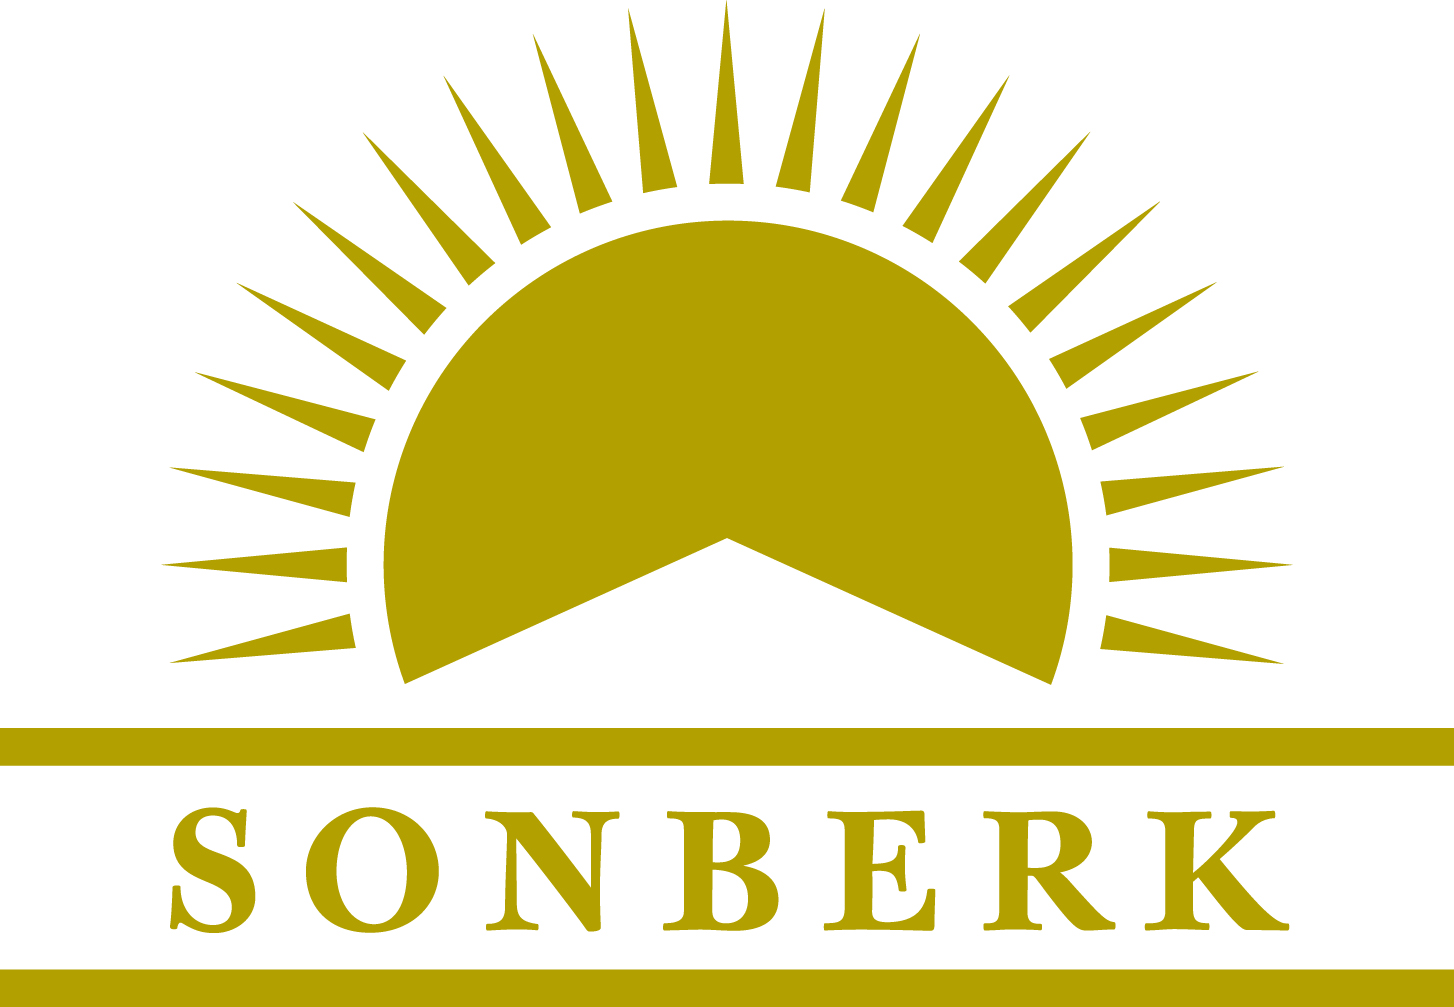 sonberk logo 2